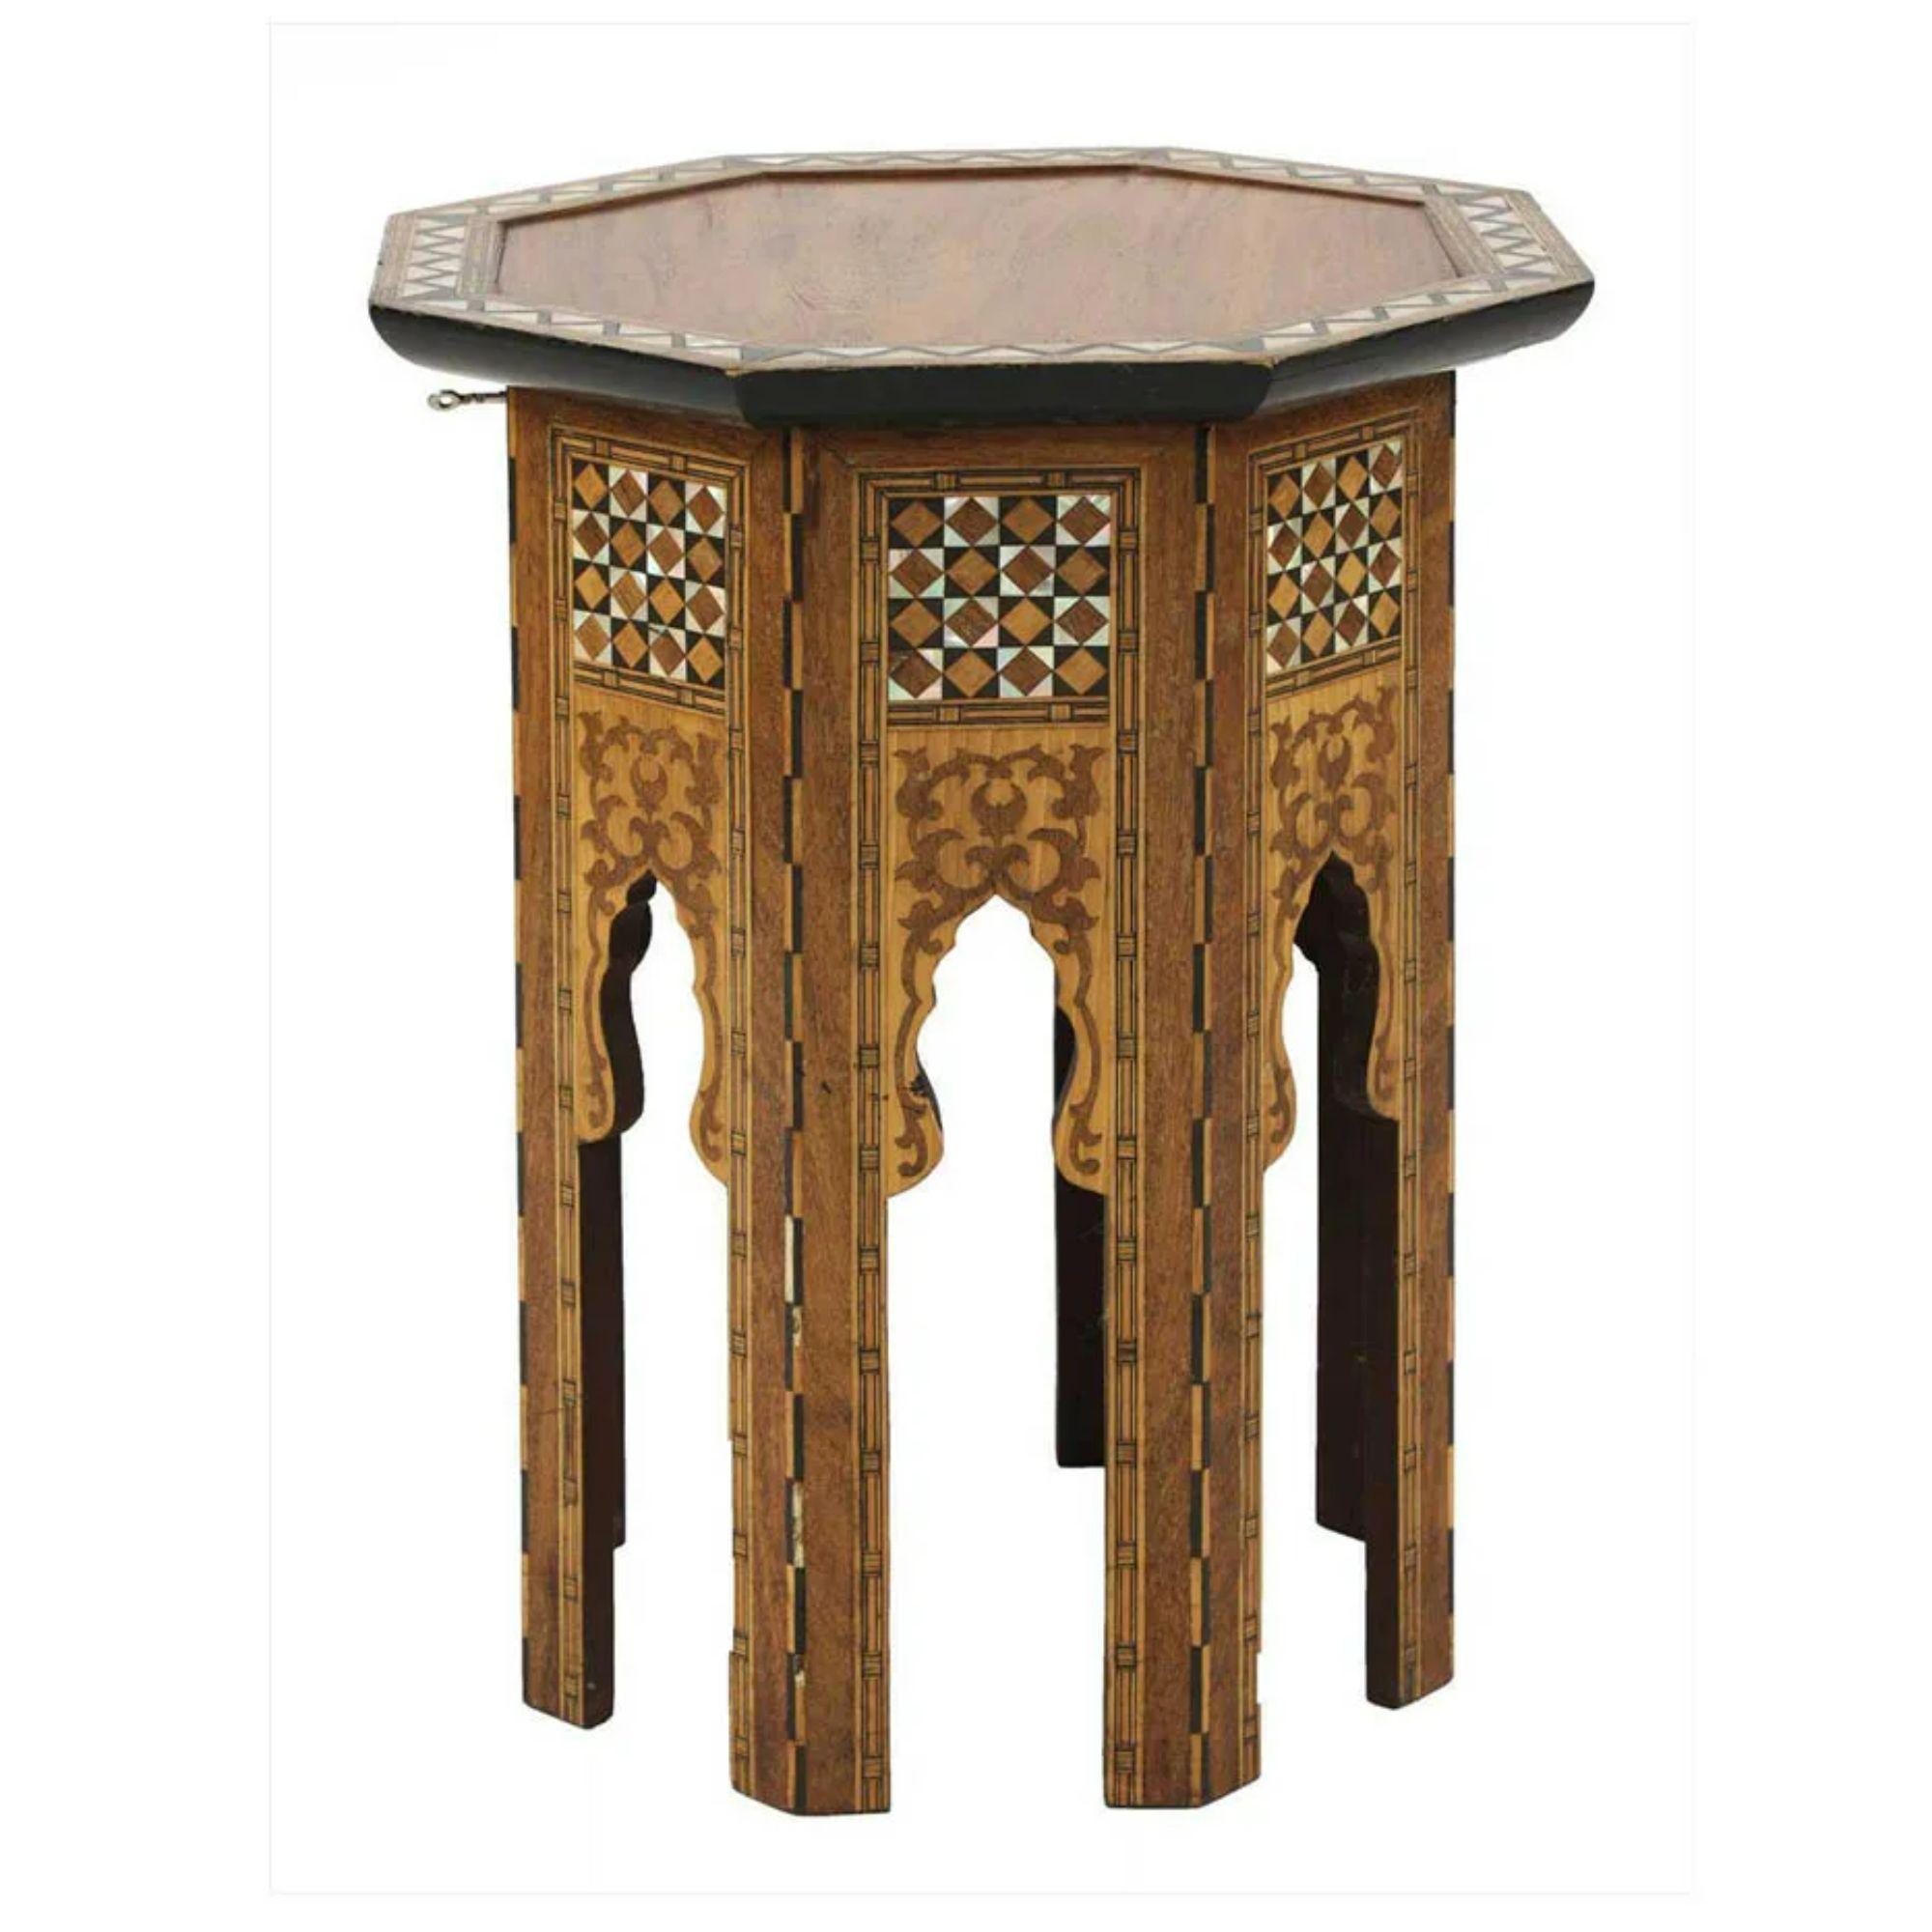 Syrischer achteckiger Tisch, 19. Jahrhundert

Ein achteckiger maurischer Tisch mit Intarsien aus Perlmutt und Ebenholz in geometrischen Mustern. Ende des 19. Jahrhunderts.

Der Deckel ist aufklappbar und verbirgt ein abschließbares